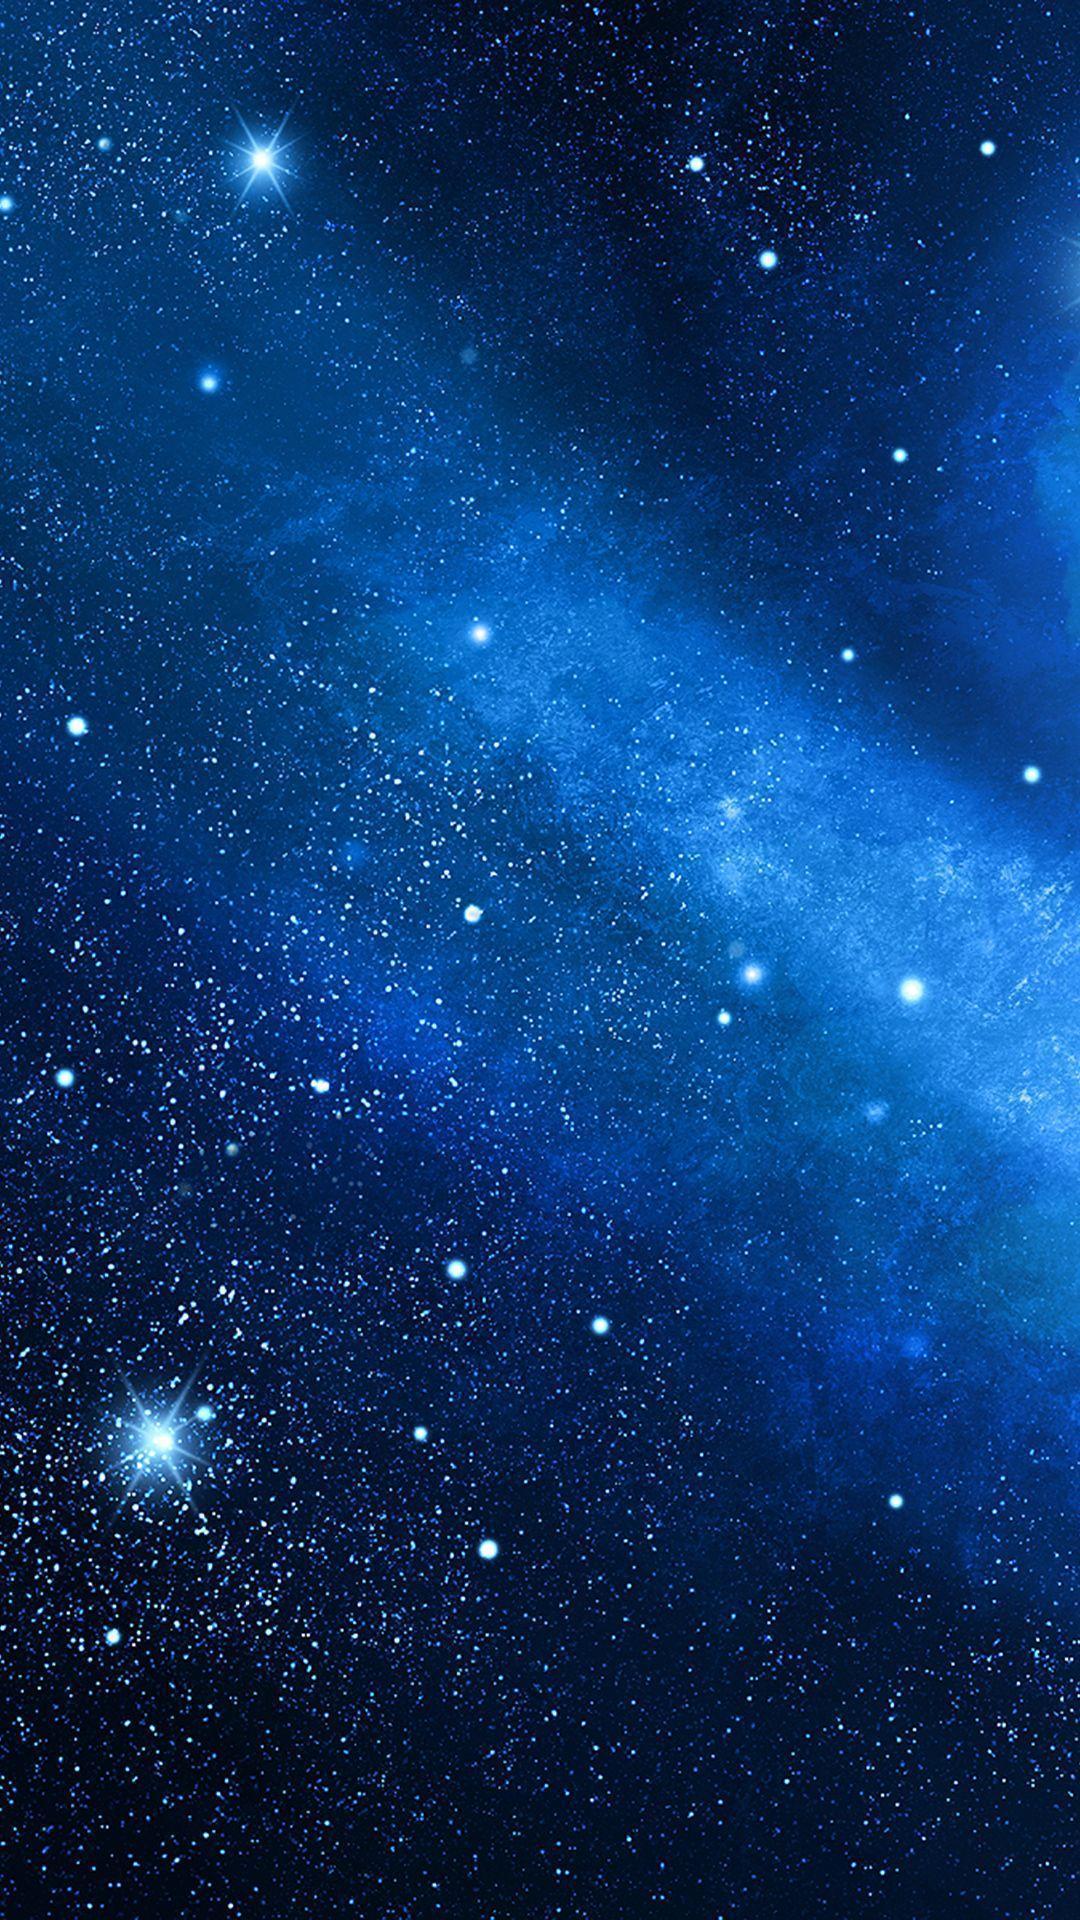 Hình nền thiên hà xanh: Thiên hà xanh - một màu sắc đặc trưng của vũ trụ đầy bí ẩn và hấp dẫn. Hãy tải ngay những hình nền thiên hà xanh để trang trí cho màn hình điện thoại hay máy tính của bạn, vừa sáng tạo lại cực kỳ đẹp mắt.